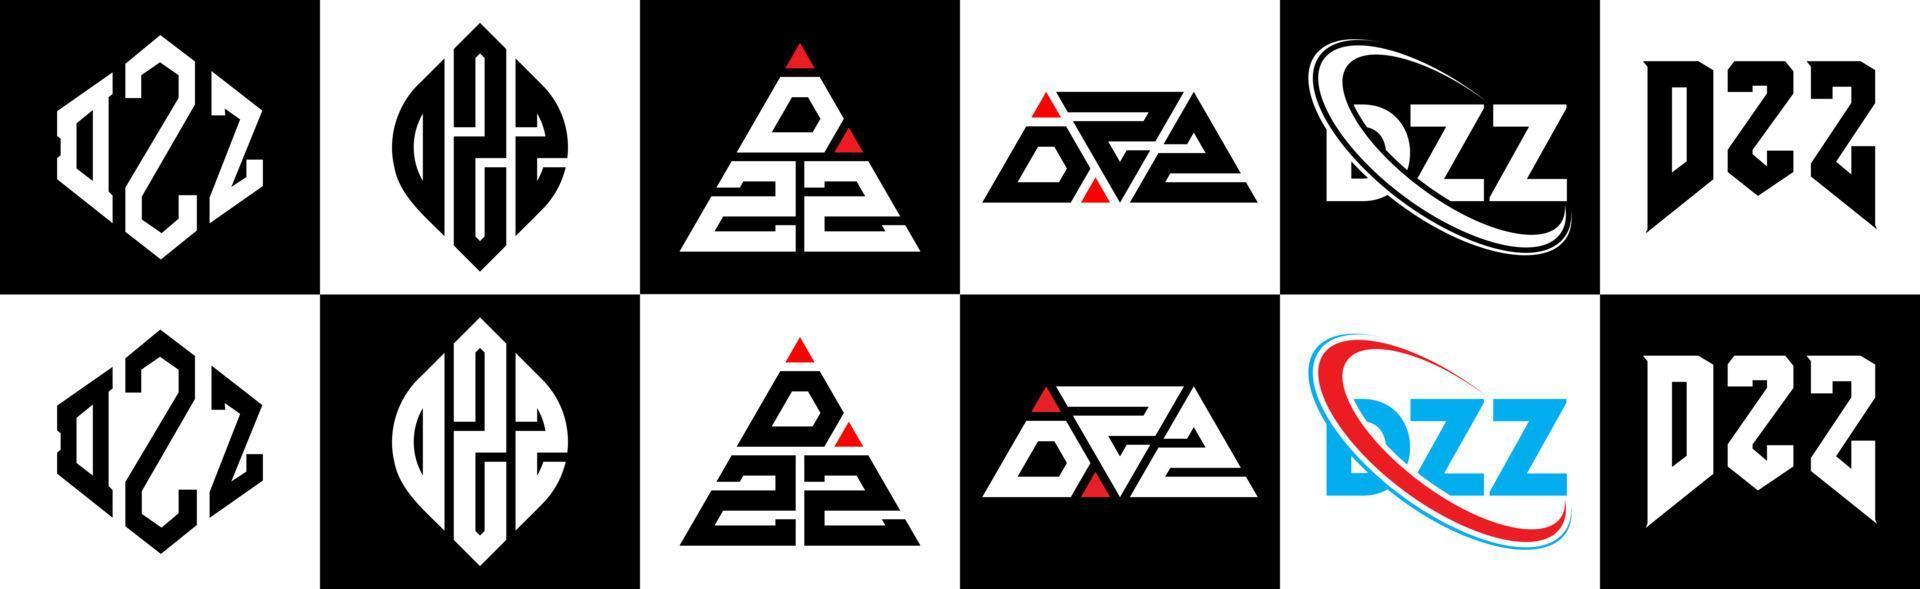 création de logo de lettre dzz en six styles. polygone dzz, cercle, triangle, hexagone, style plat et simple avec logo de lettre de variation de couleur noir et blanc dans un plan de travail. dzz logo minimaliste et classique vecteur